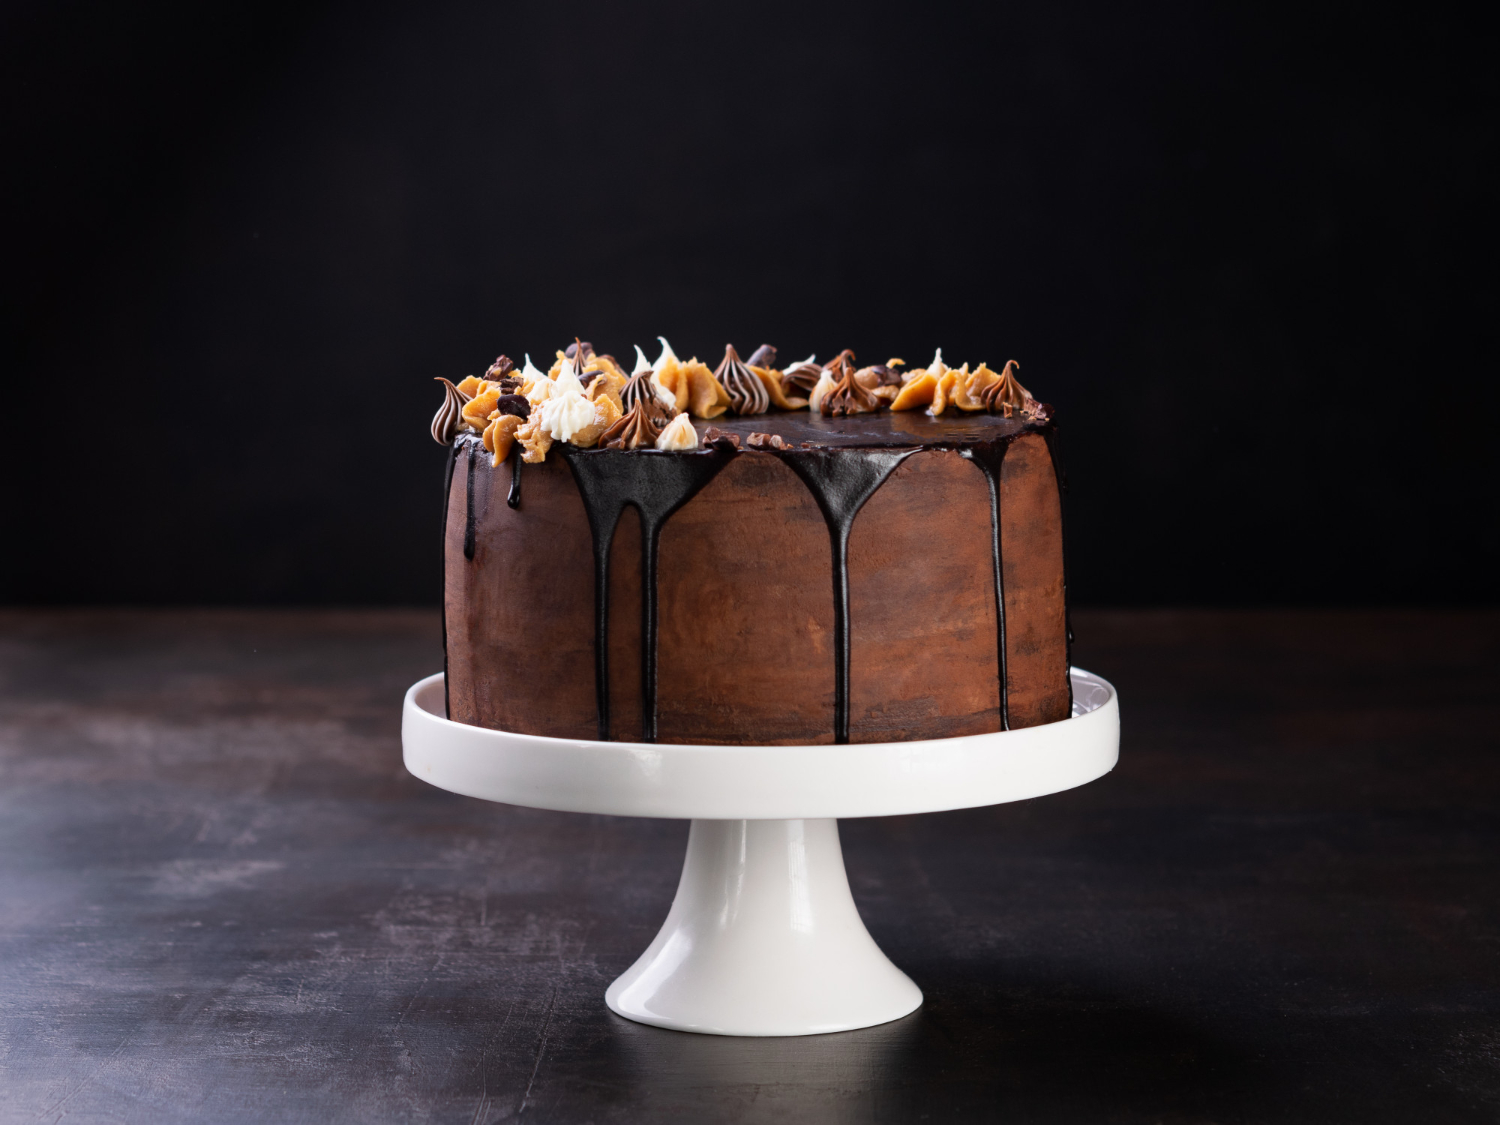 Fancy Chocolate Cake stock photo. Image of background - 7634292